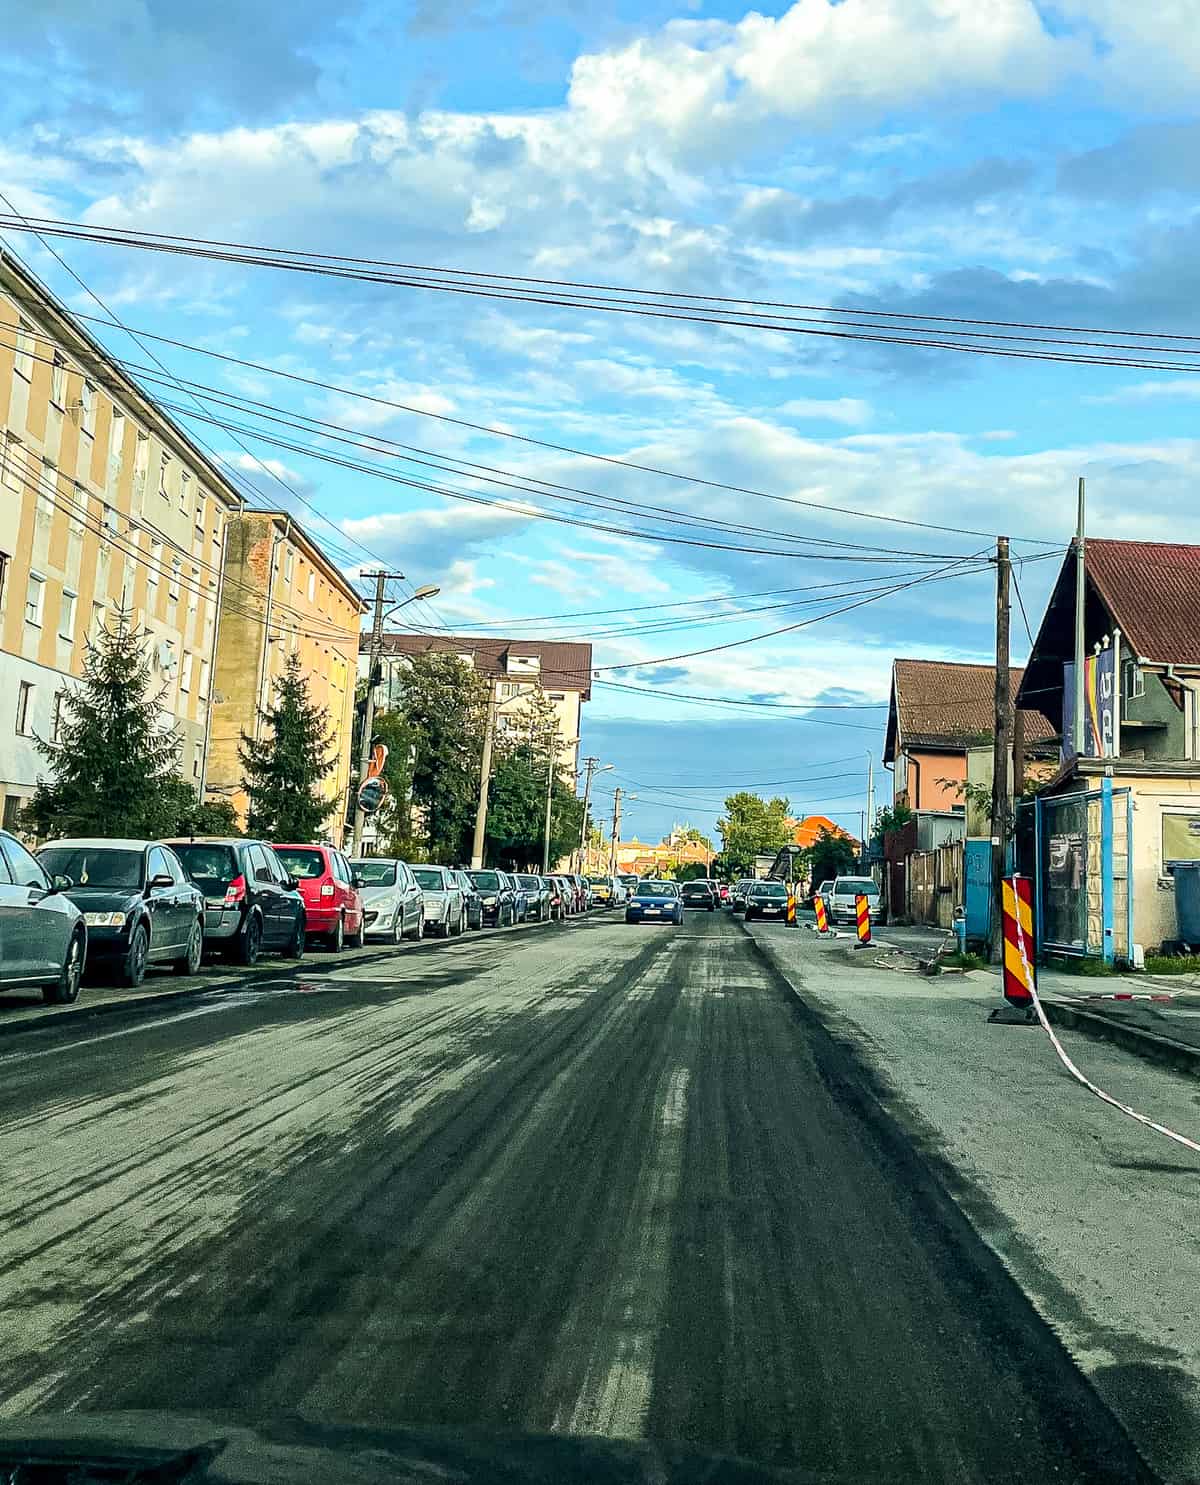 video foto: lucrări de modernizare pe strada țiglarilor - se toarnă asfalt nou